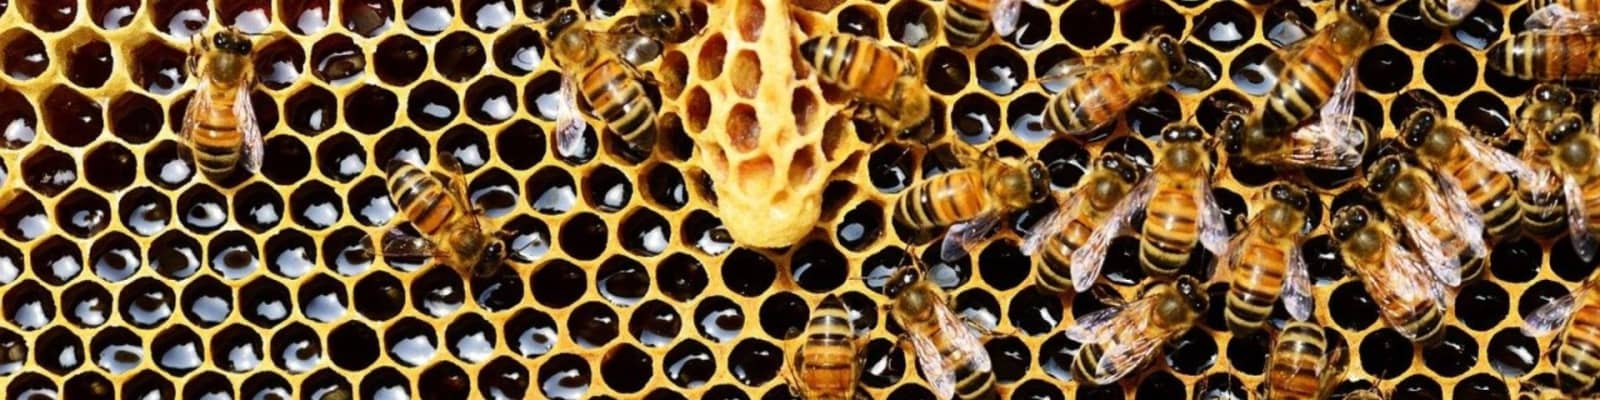 bee removals in Boksburg